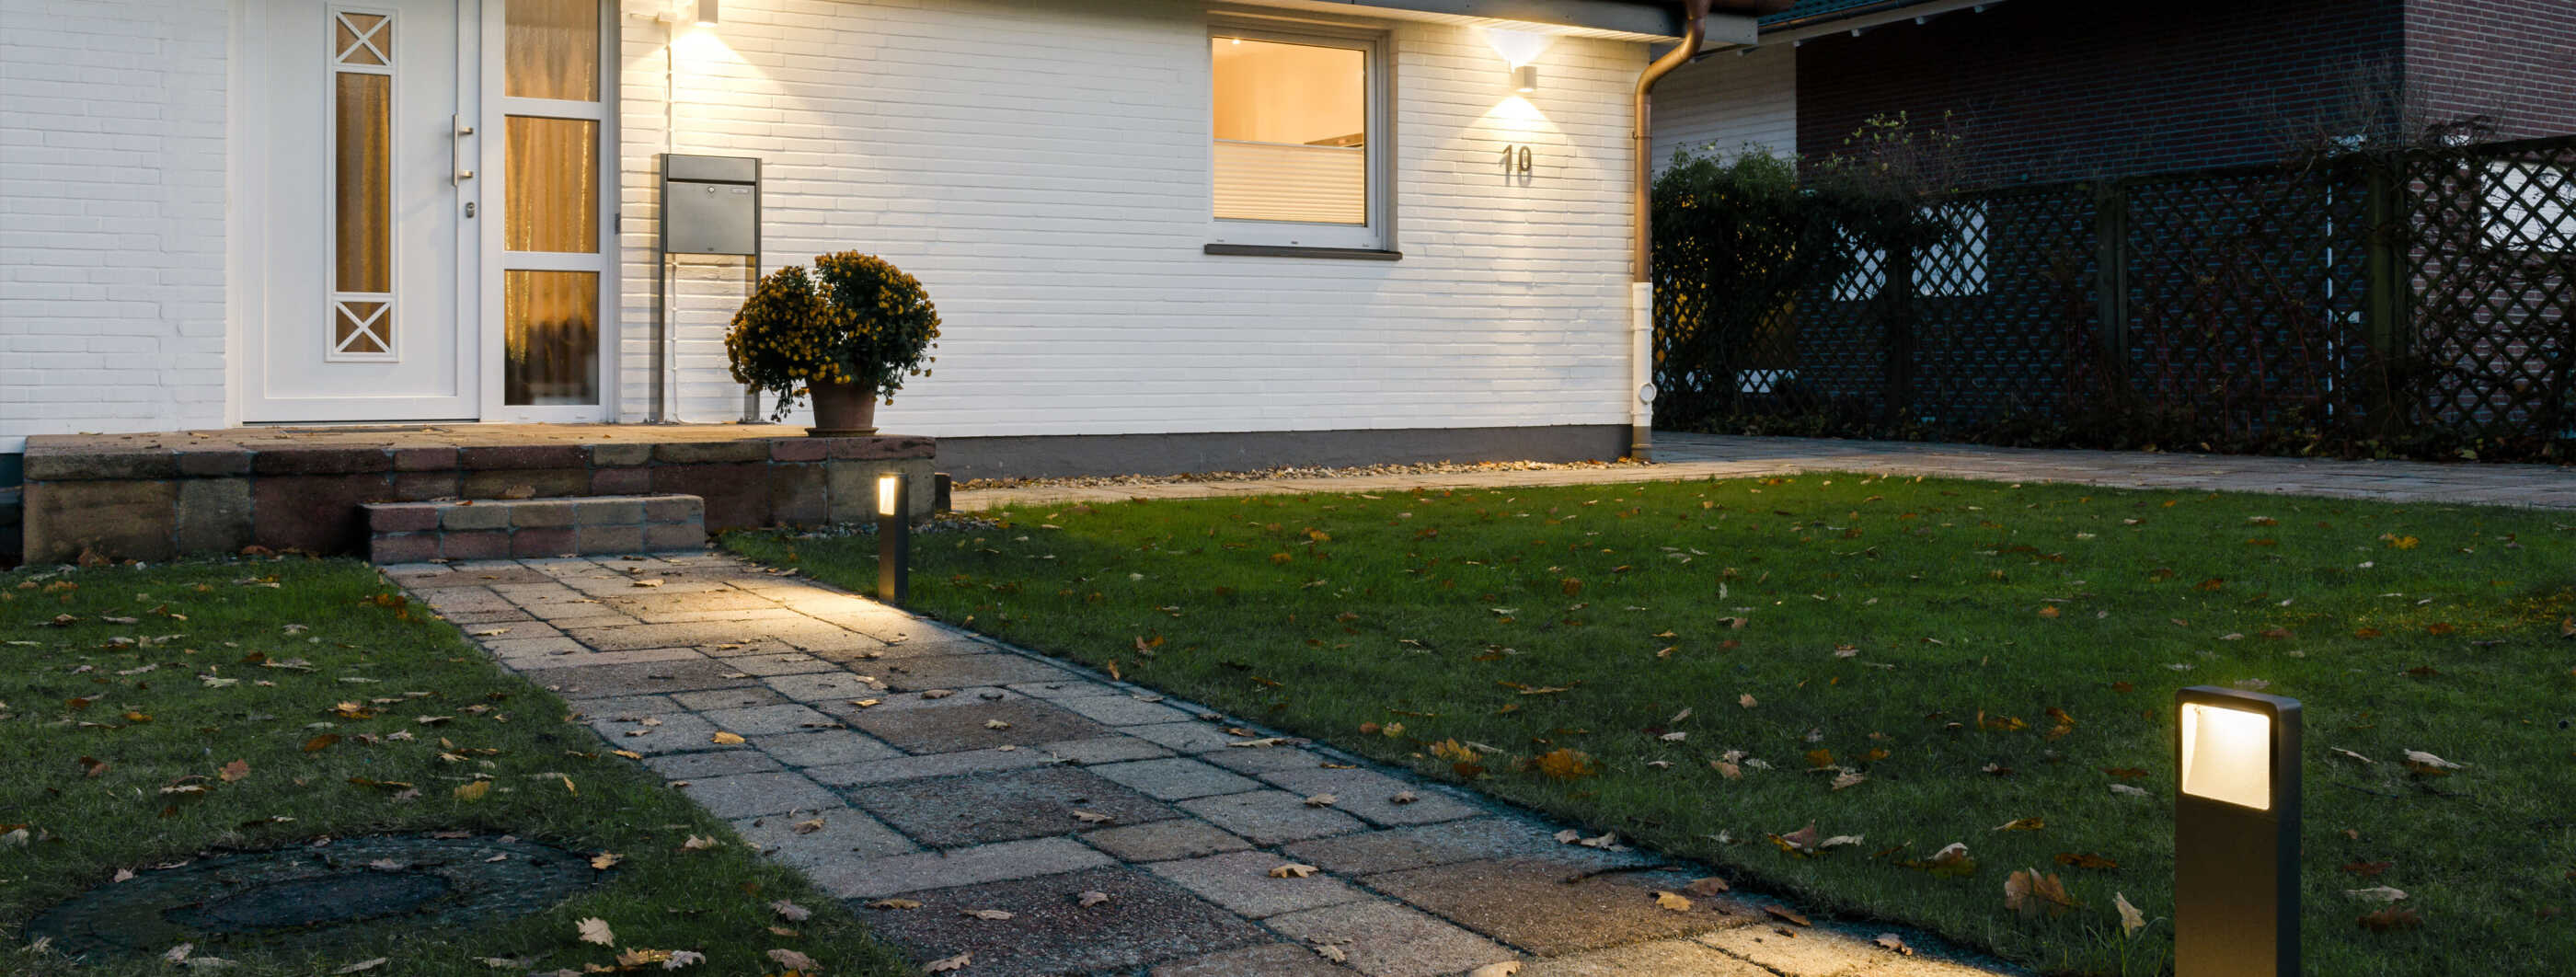 Der Zuweg zu einem Einfamilienhaus durch den Vorgarten: Wandleuchten beleuchten die Fassade, Sockelleuchten werfen Licht auf den Weg. (Foto: Prediger Lichtberater)